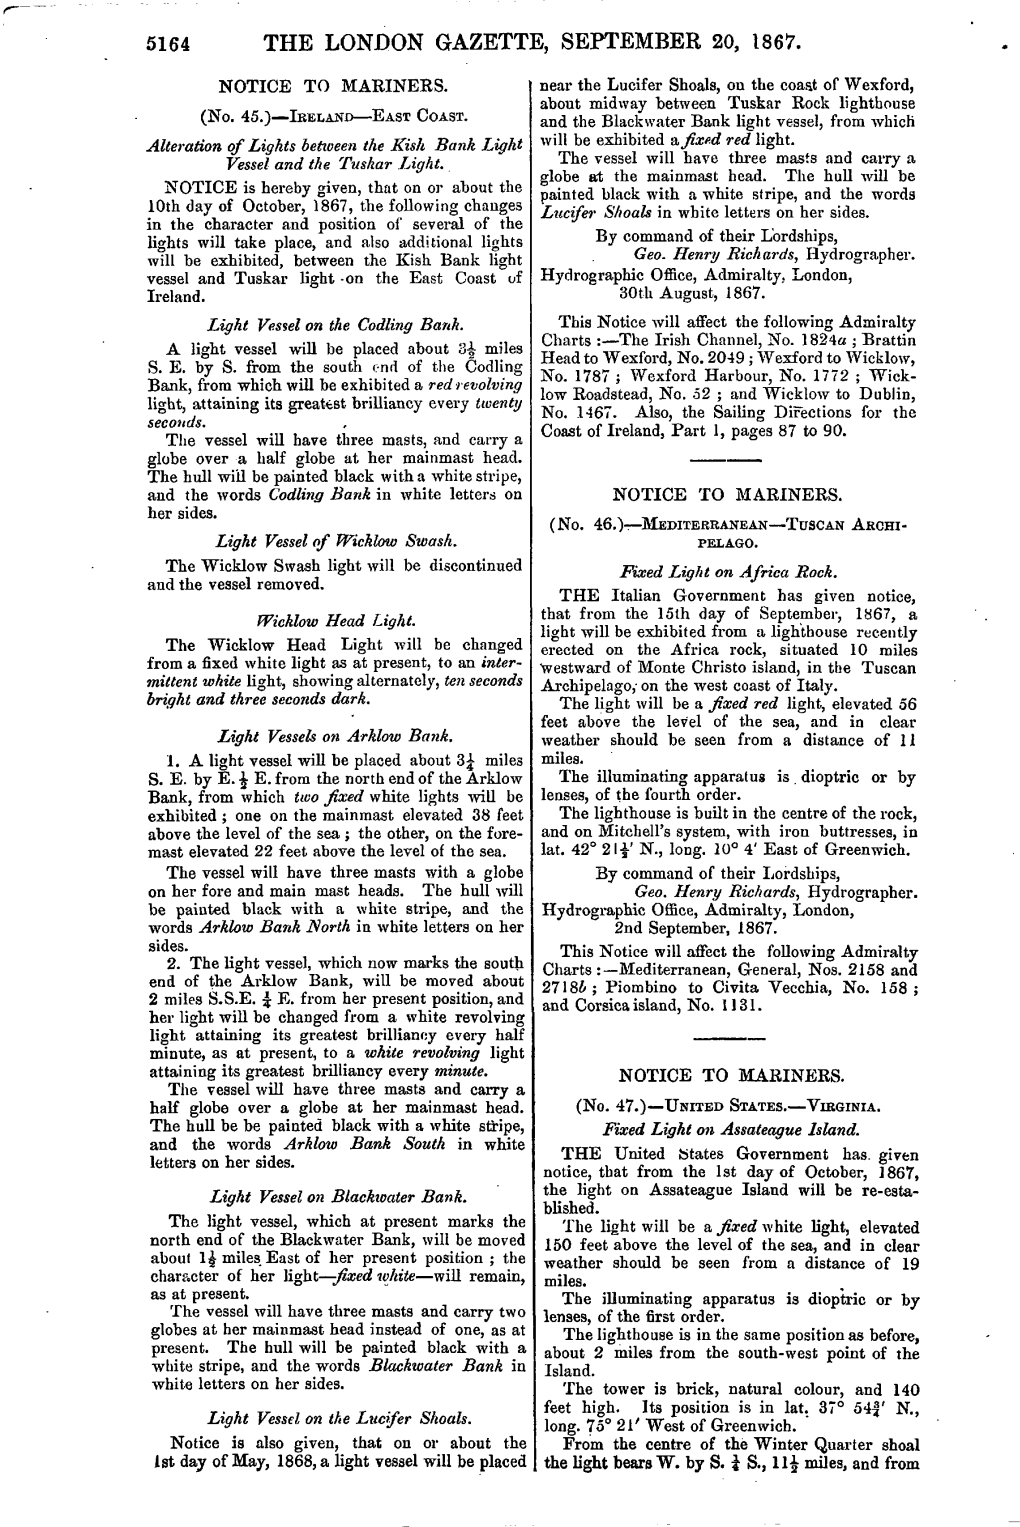 The London Gazette, September 20, 1867